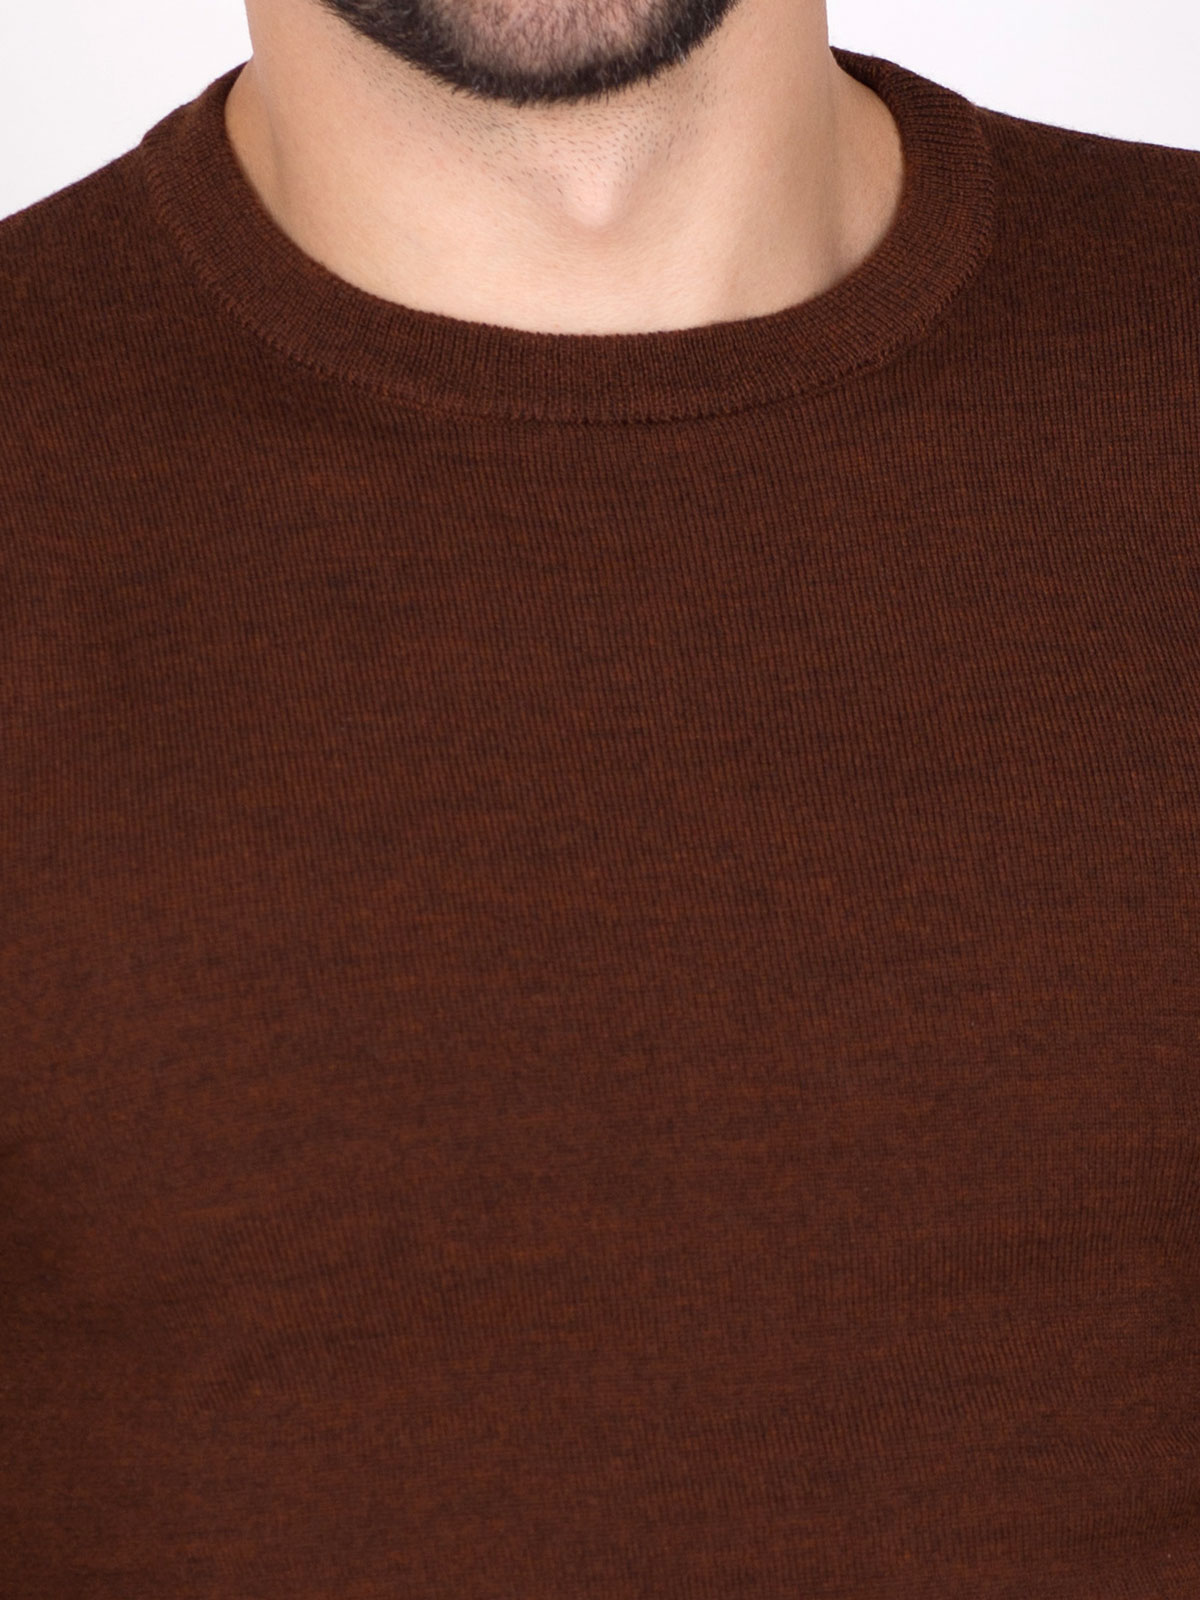 Мъжки пуловер в цвят керемида - 33090 48.00 лв img3